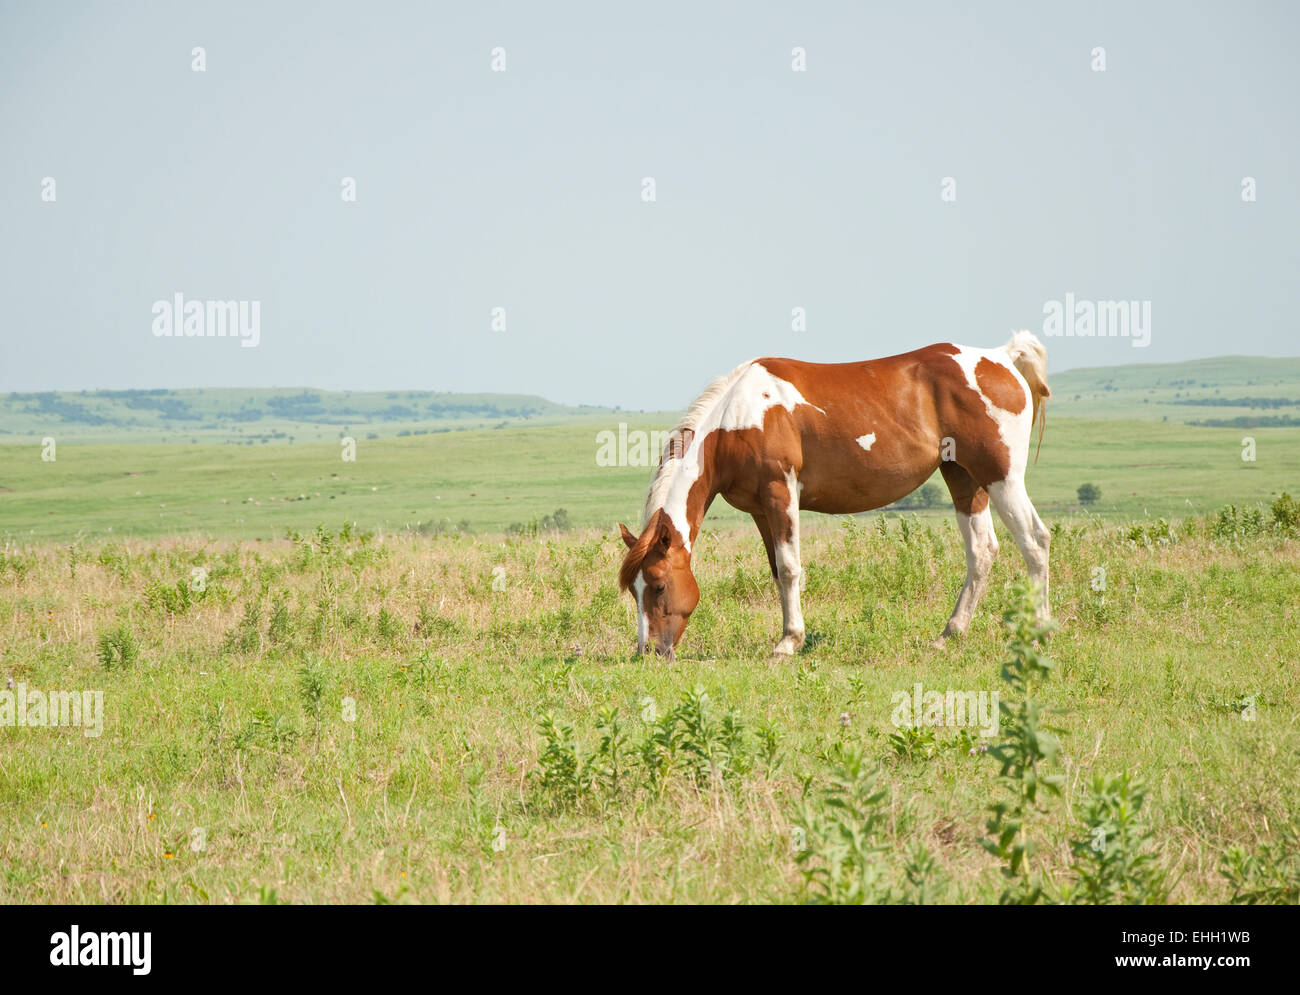 Kastanien und weißer Farbe Pferd grasen auf der Weide vor weiten, offenen Prärie Hintergrund Stockfoto